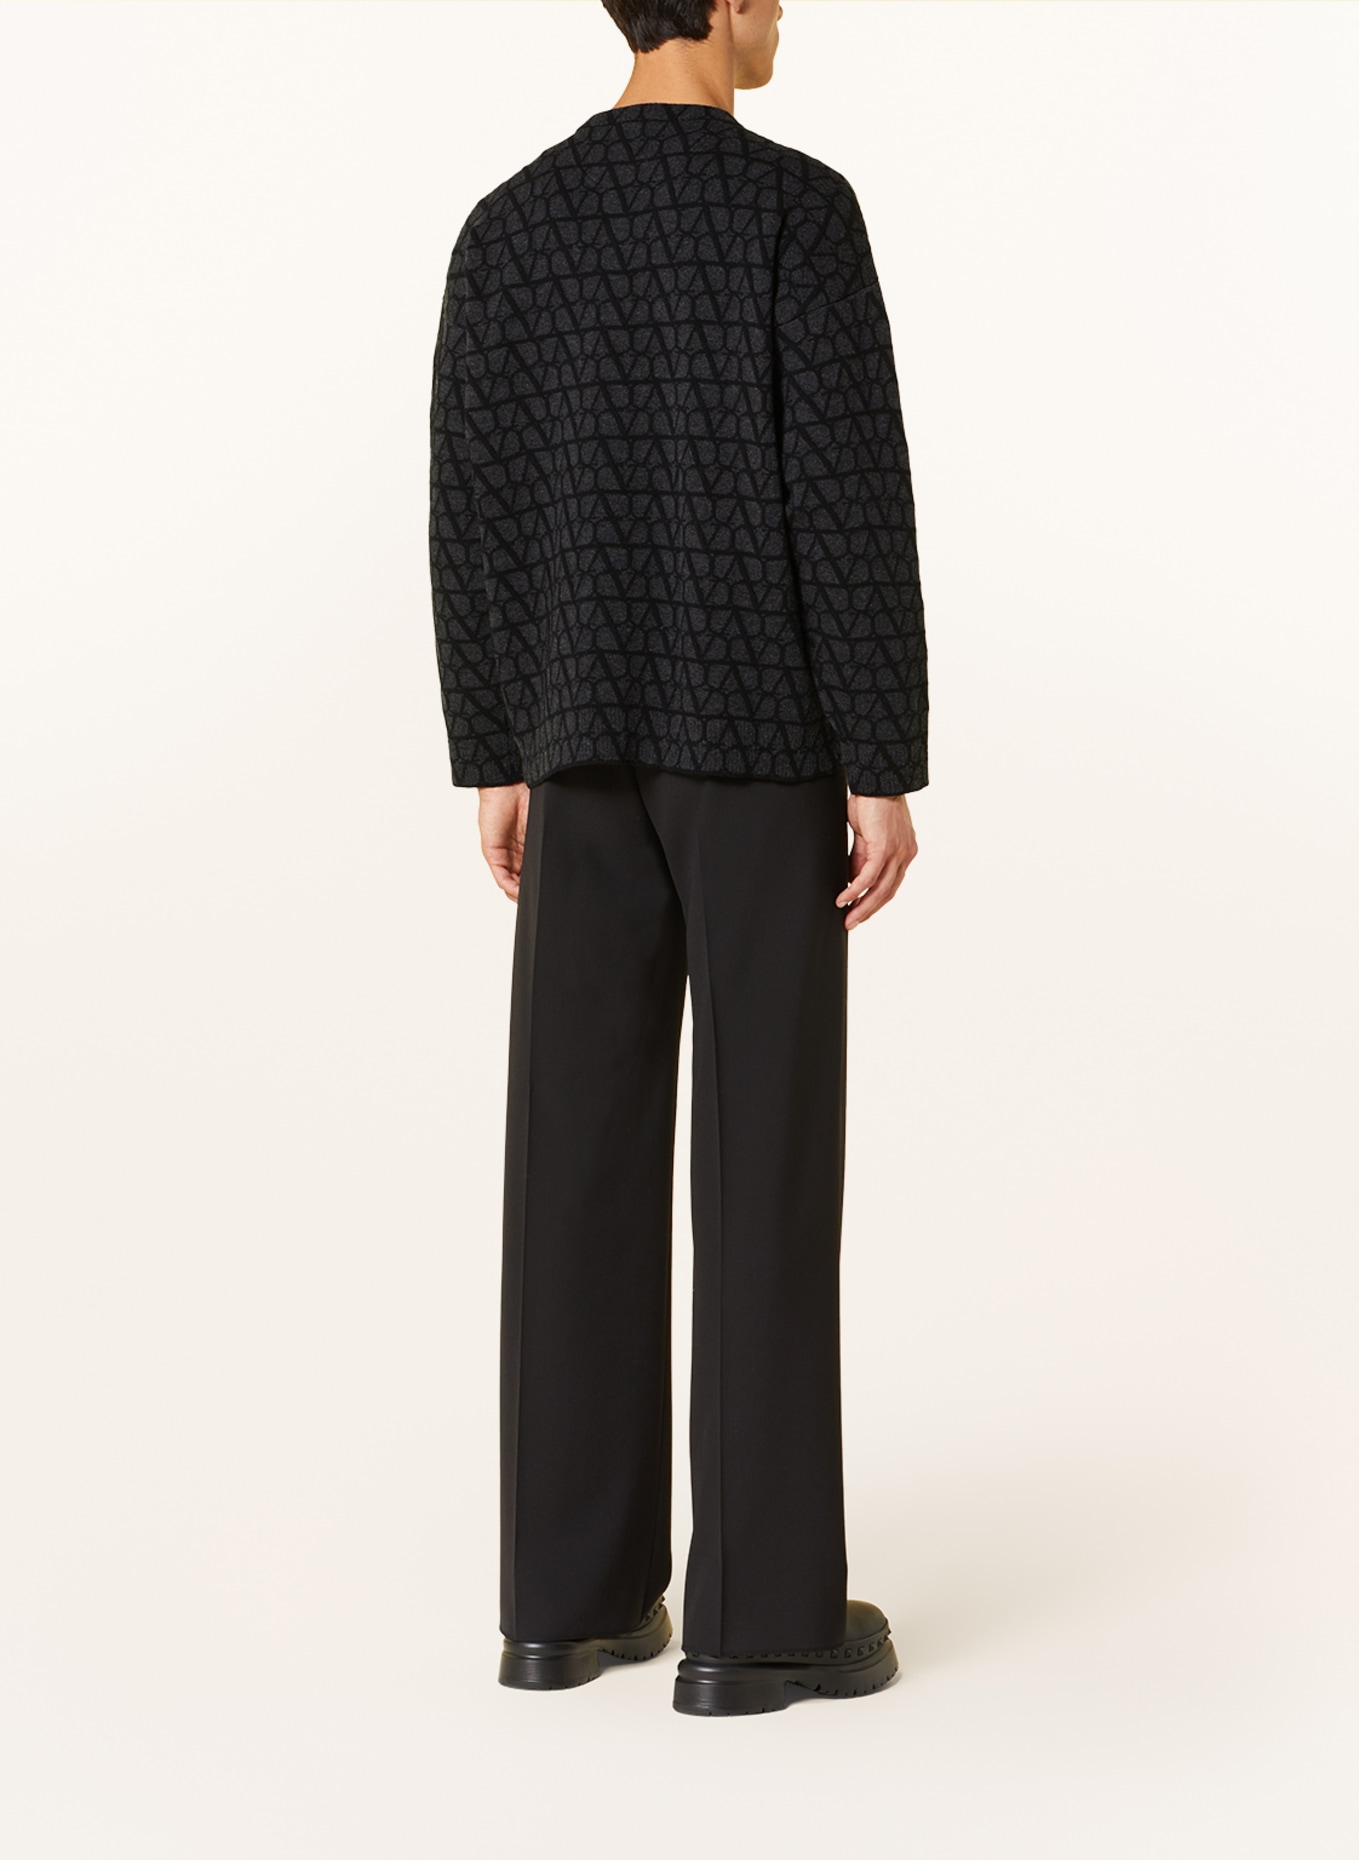 VALENTINO Sweater, Color: DARK GRAY/ BLACK (Image 3)